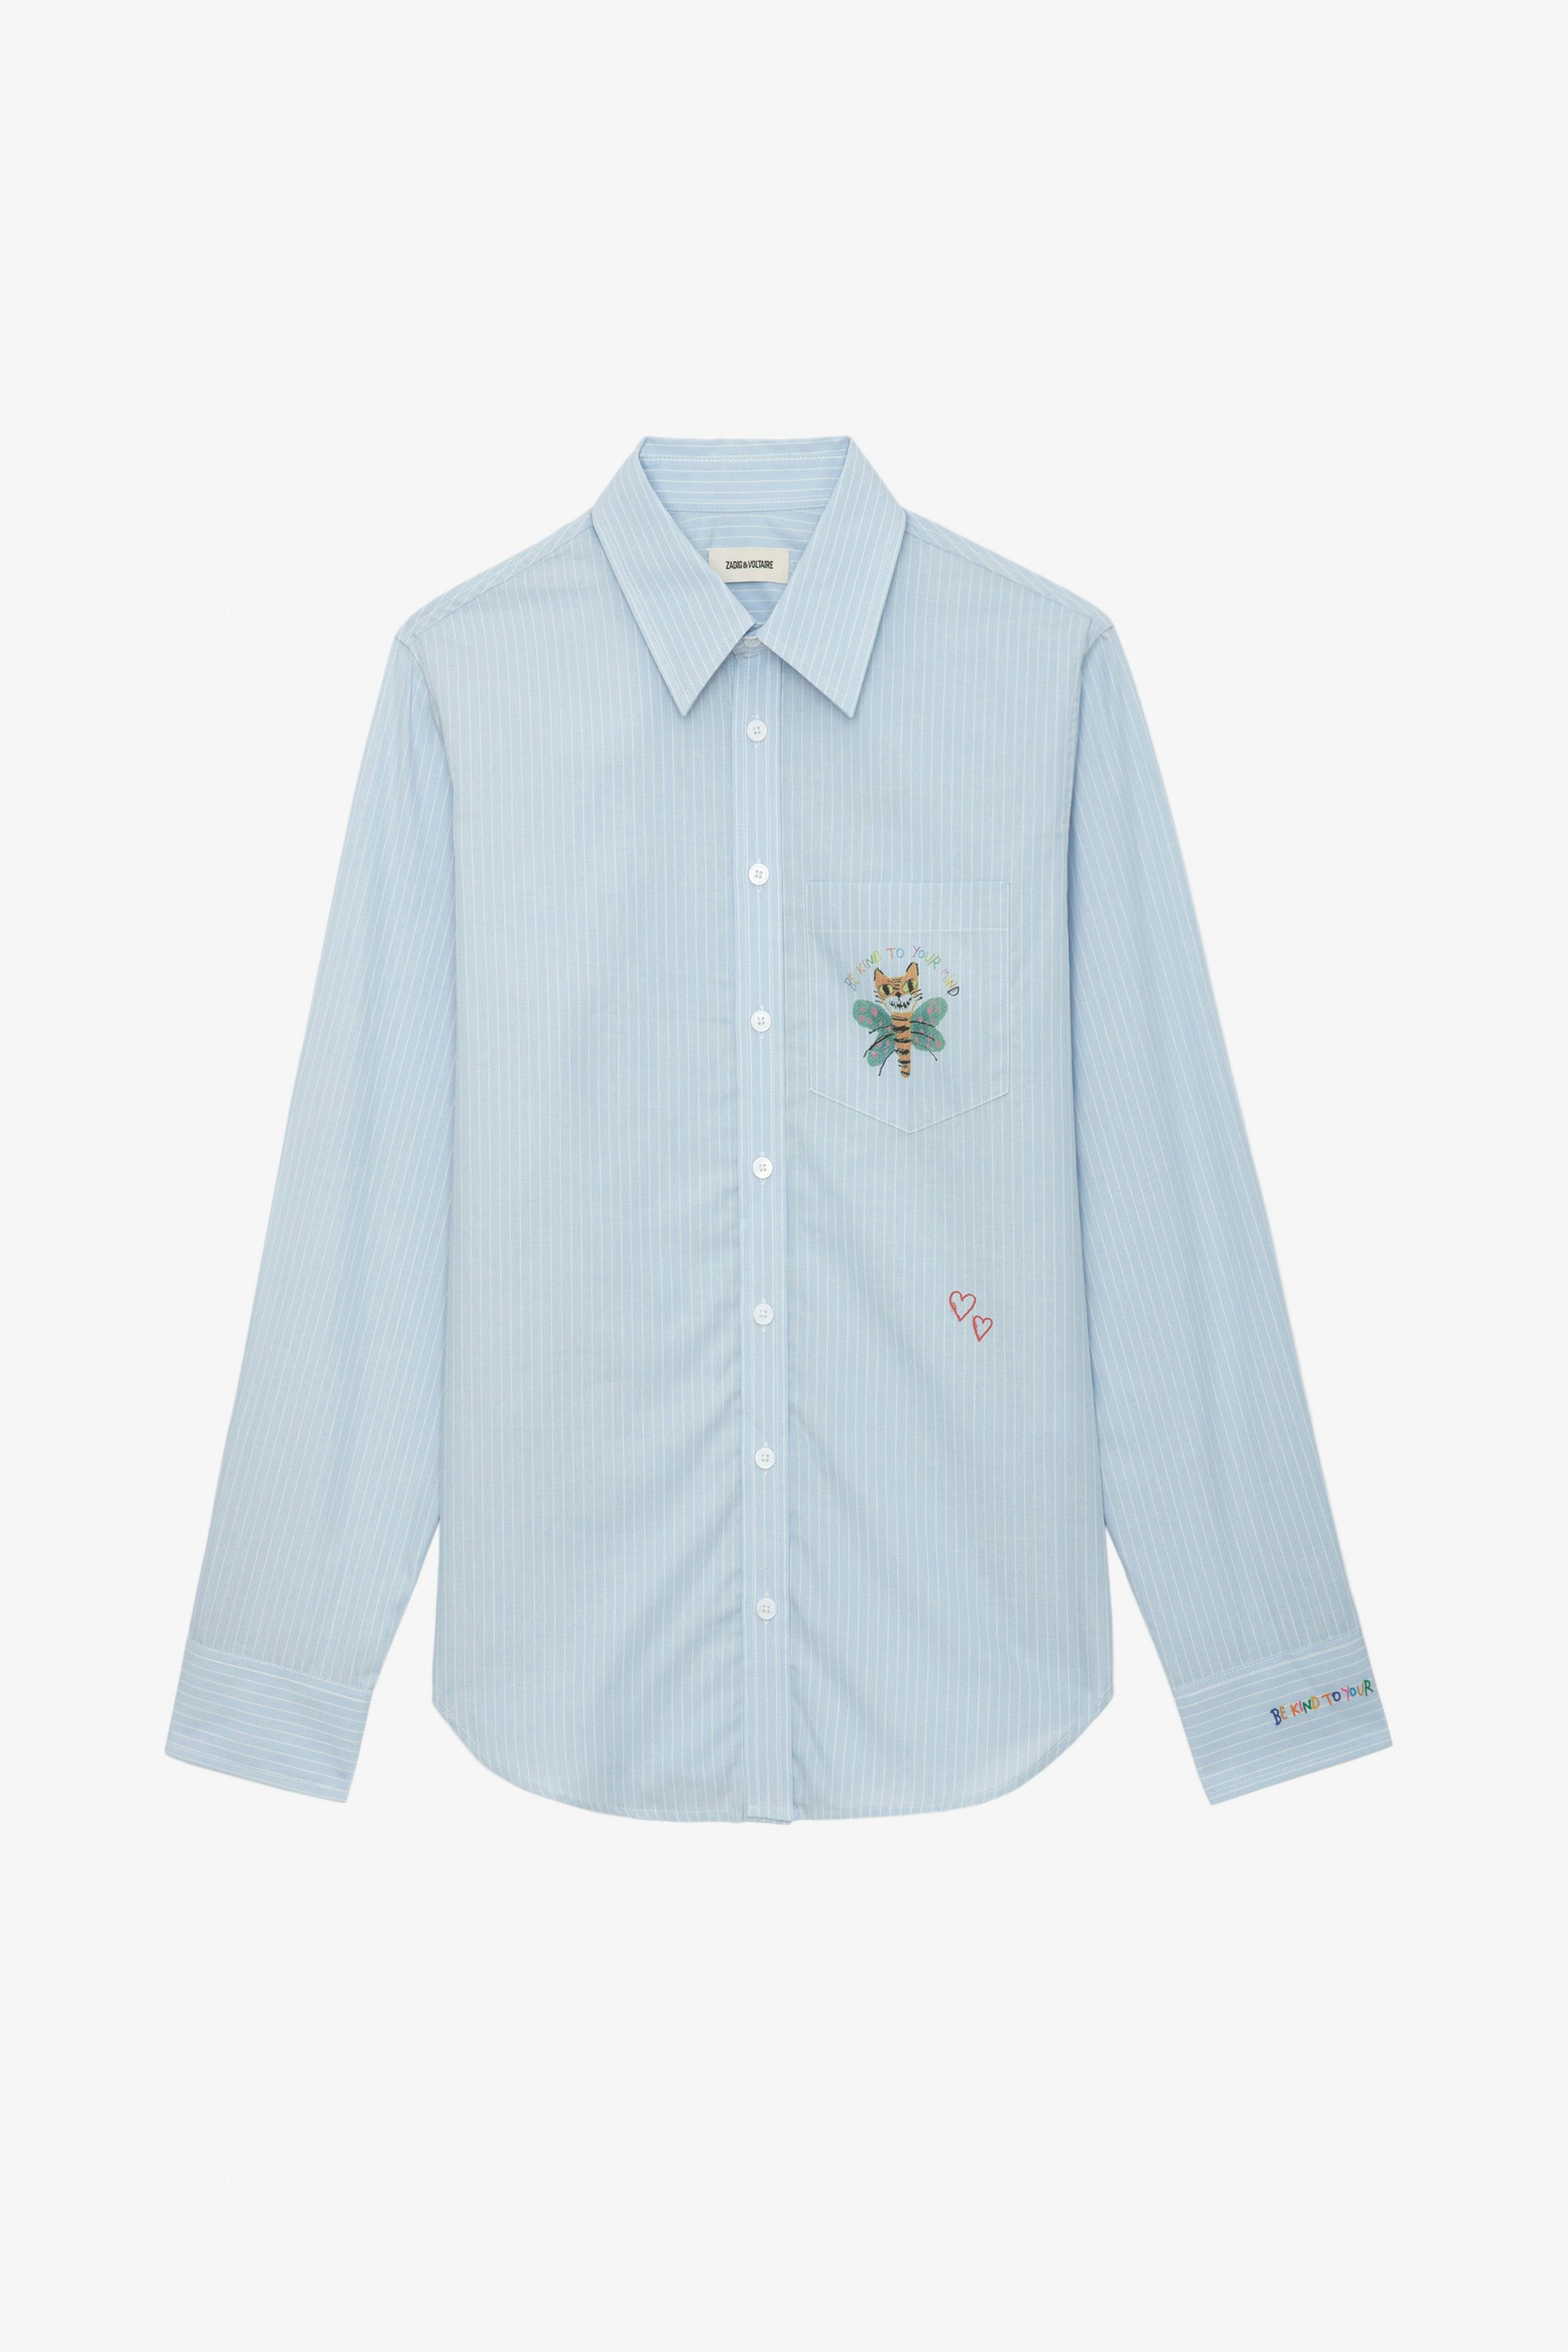 Hemd Taskiz - Langärmeliges Hemd aus Baumwolle in Blau mit Streifen und Verzierungen von Humberto Cruz.